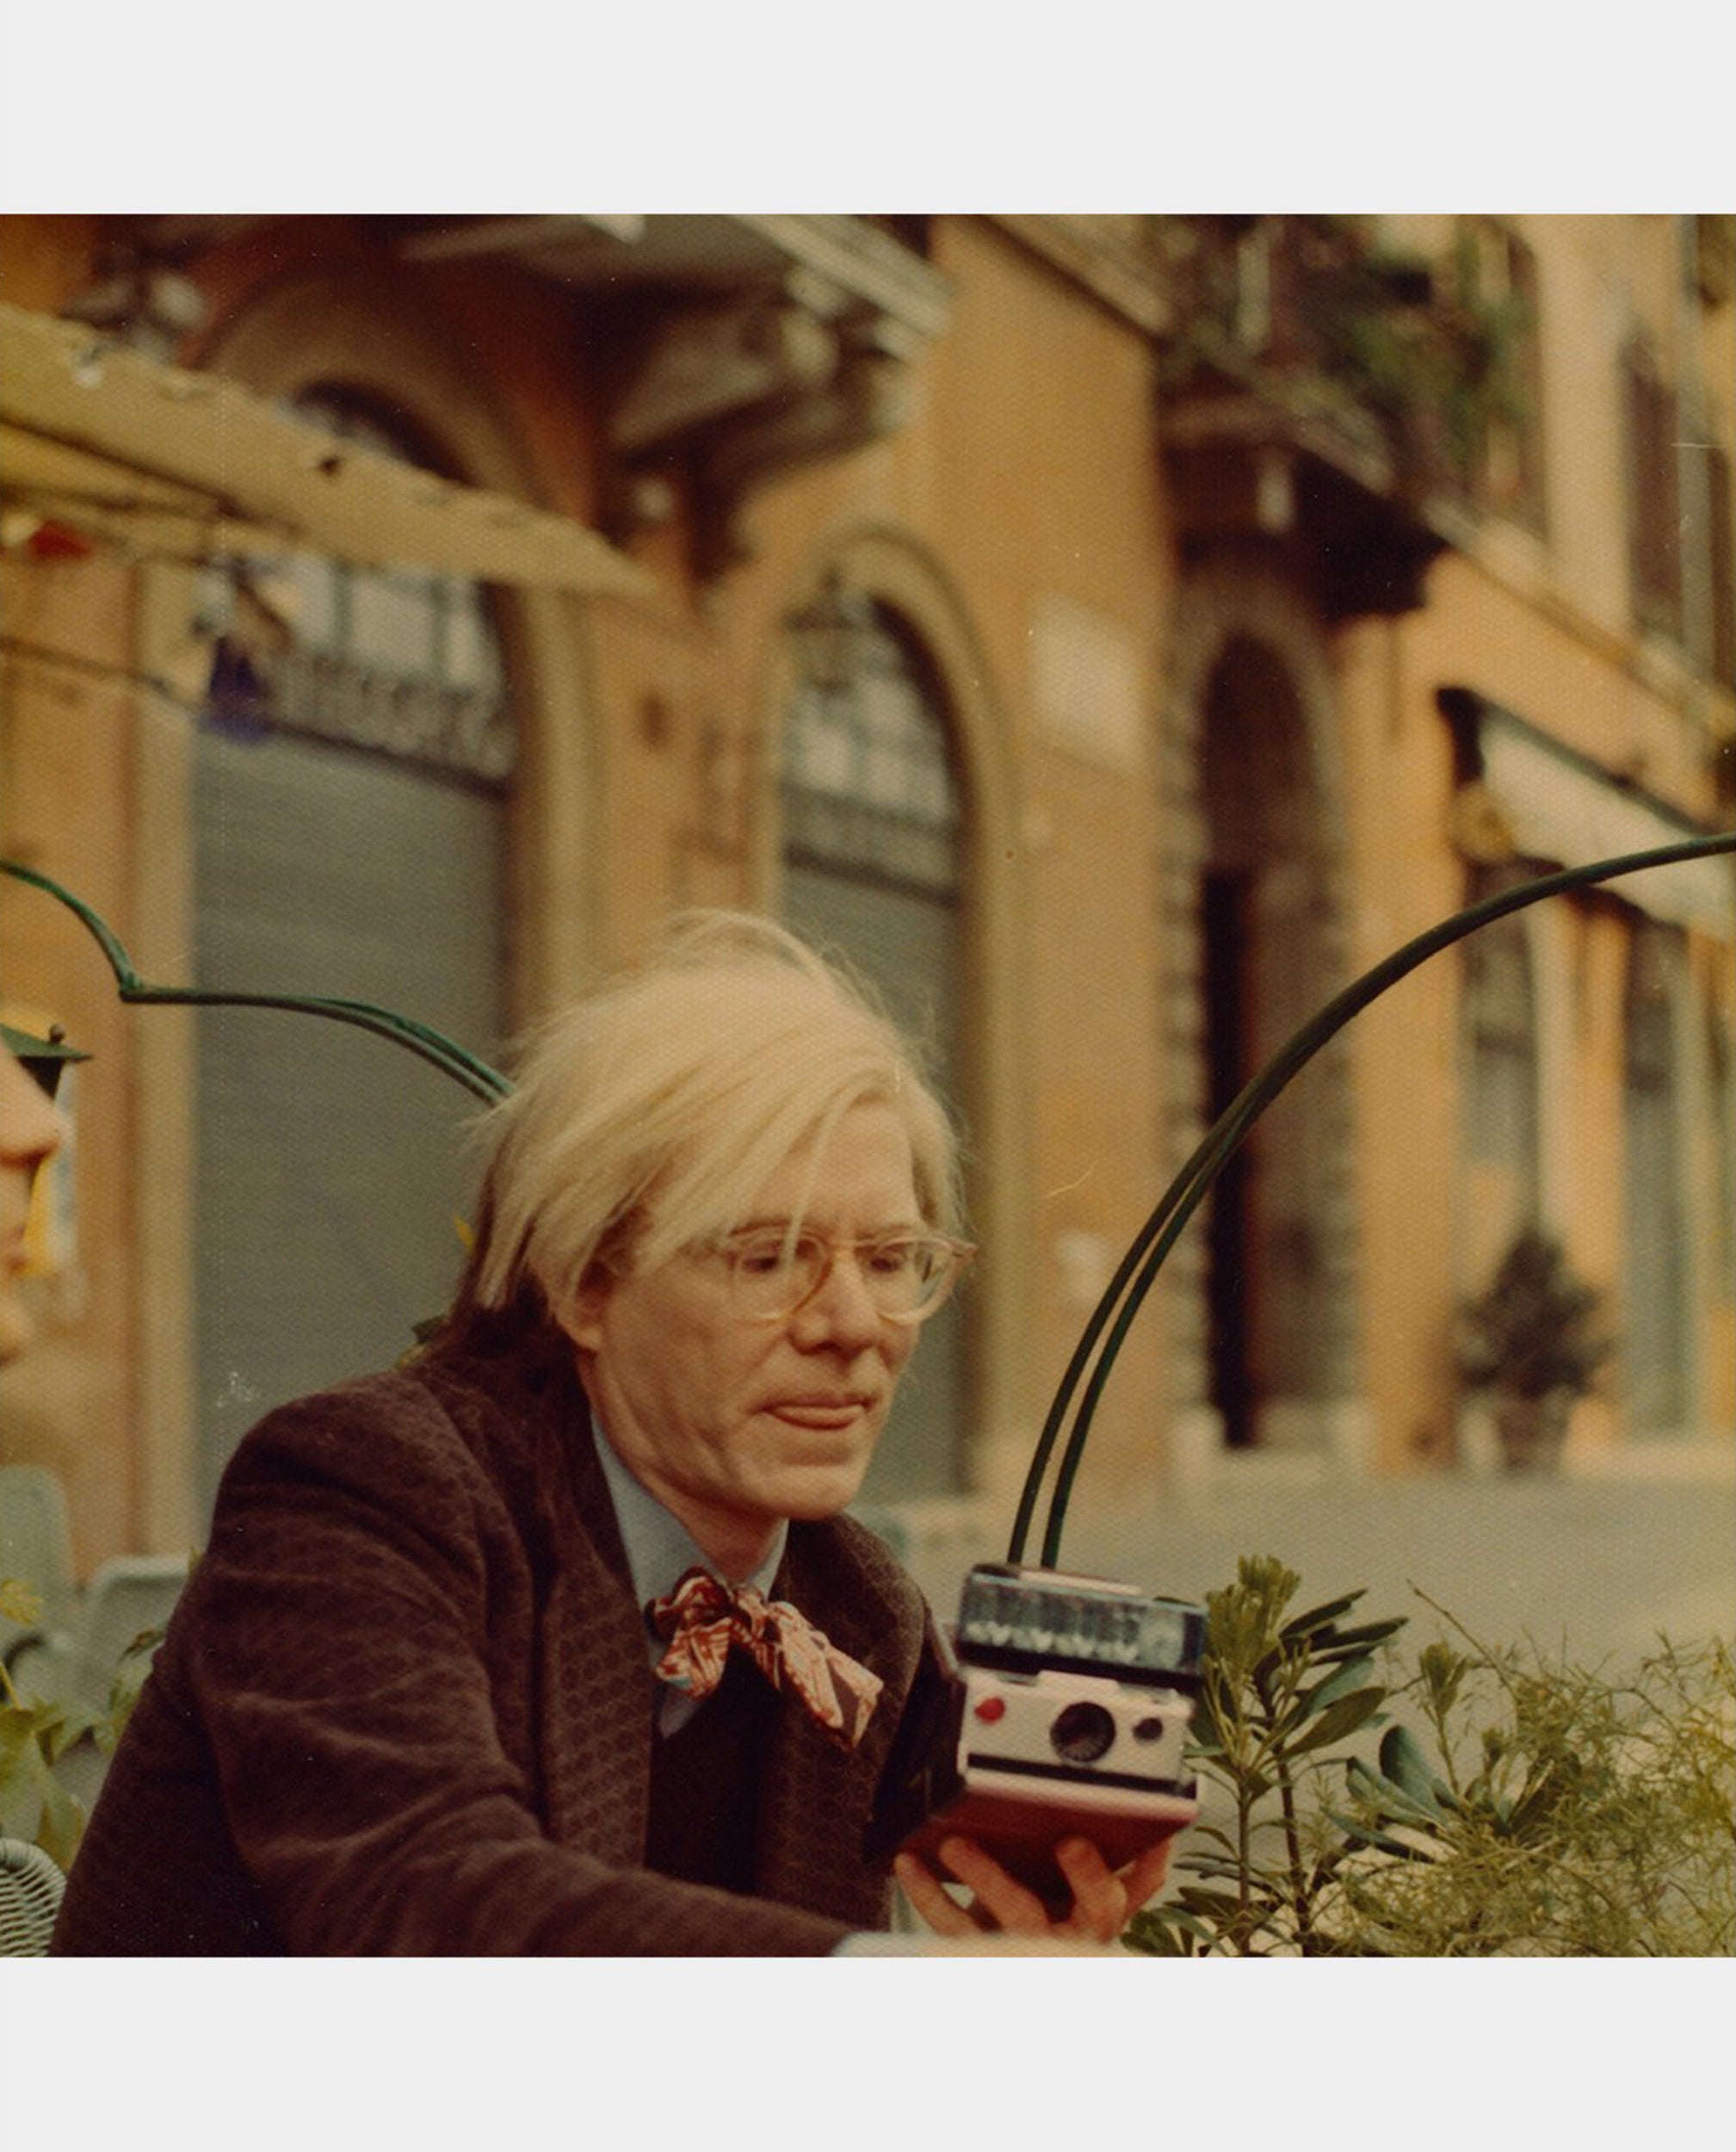 Andy Warhol: Polaroids "Vintage condition"